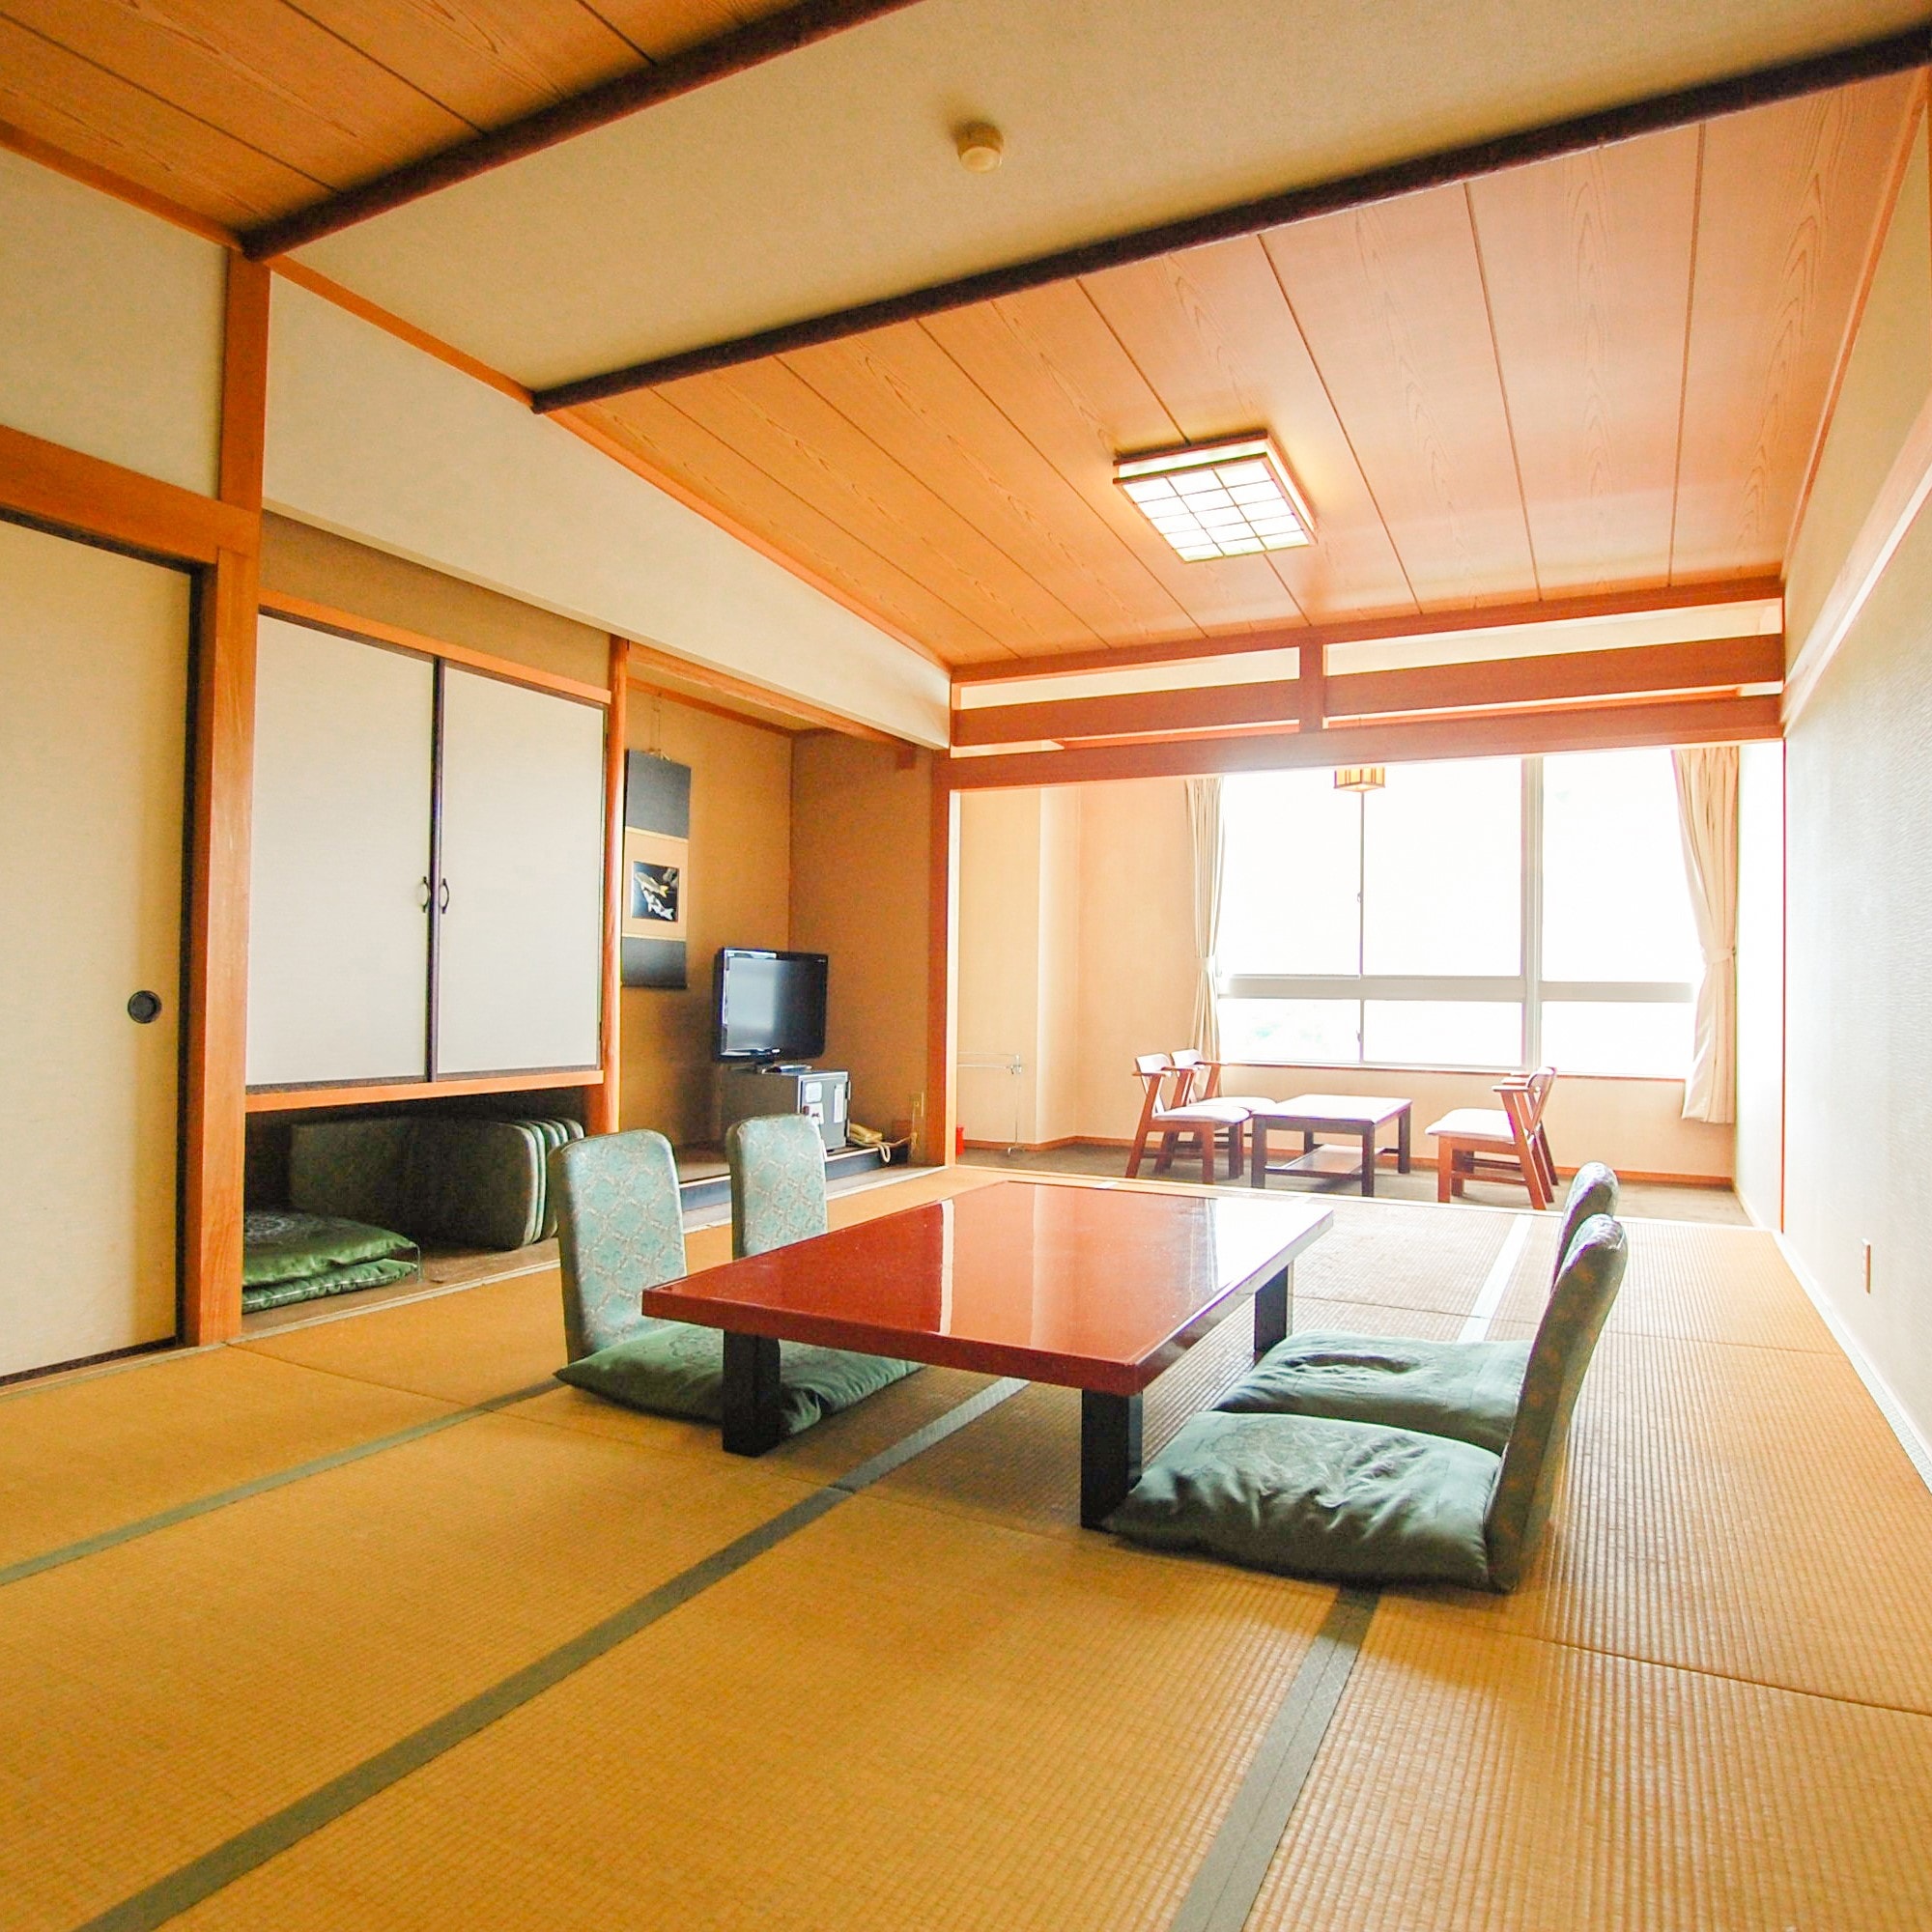 ห้องพักสไตล์ญี่ปุ่น (14 เสื่อทาทามิ) พร้อมวิวทะเลในแนวทแยง